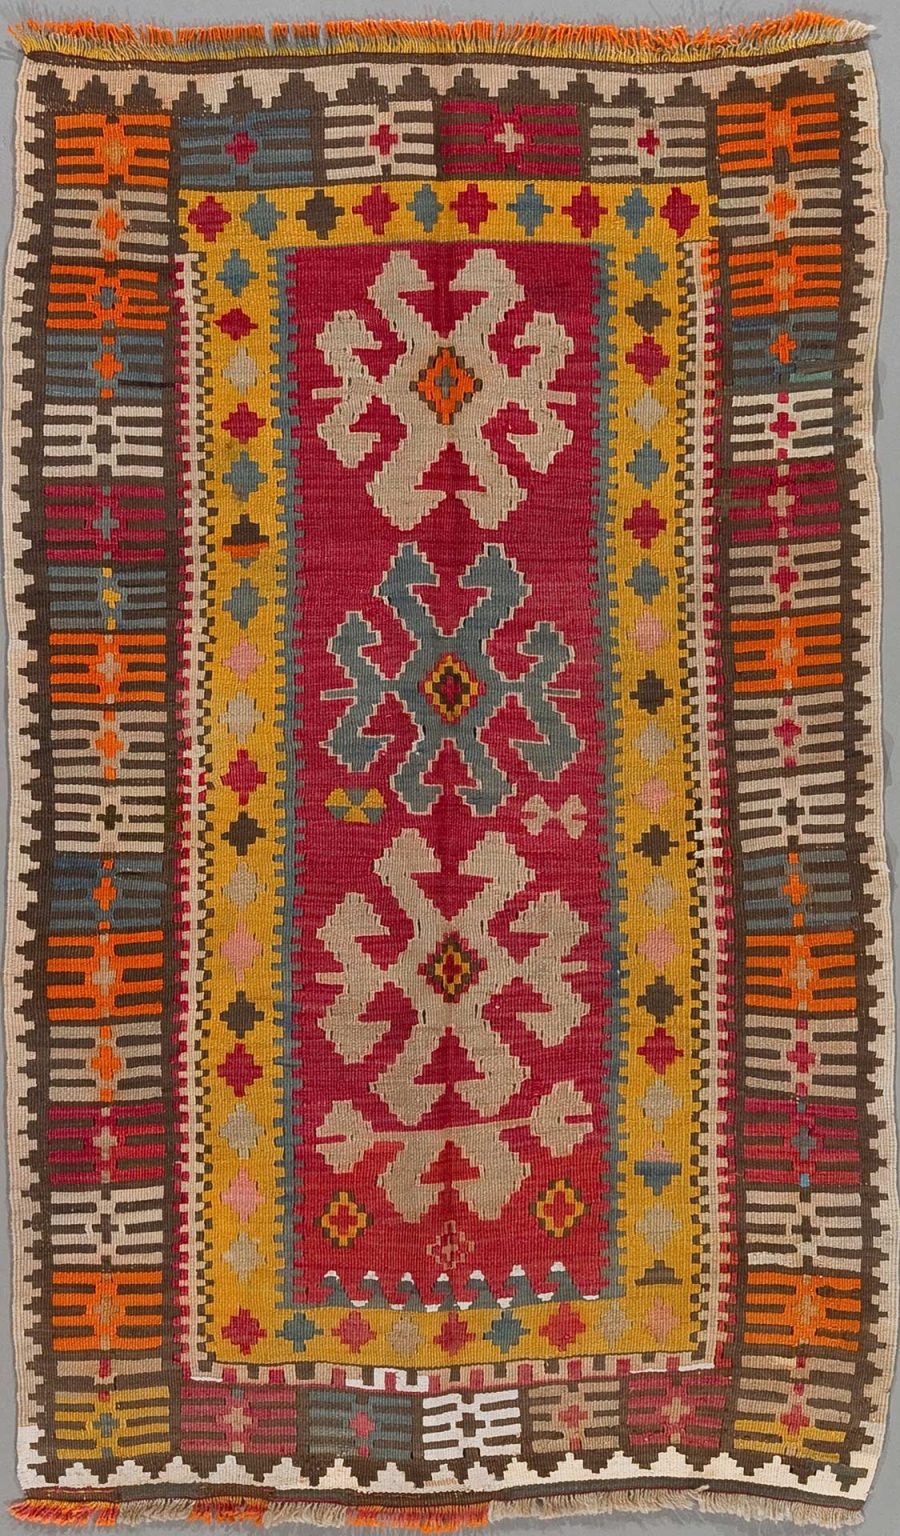 Handgewebter Teppich mit traditionellen Mustern in Rot, Gelb, Blau, Grau und Beige und zentralem Medaillon-Motiv, flankiert von dekorativen Bordüren und Fransen an den Enden.